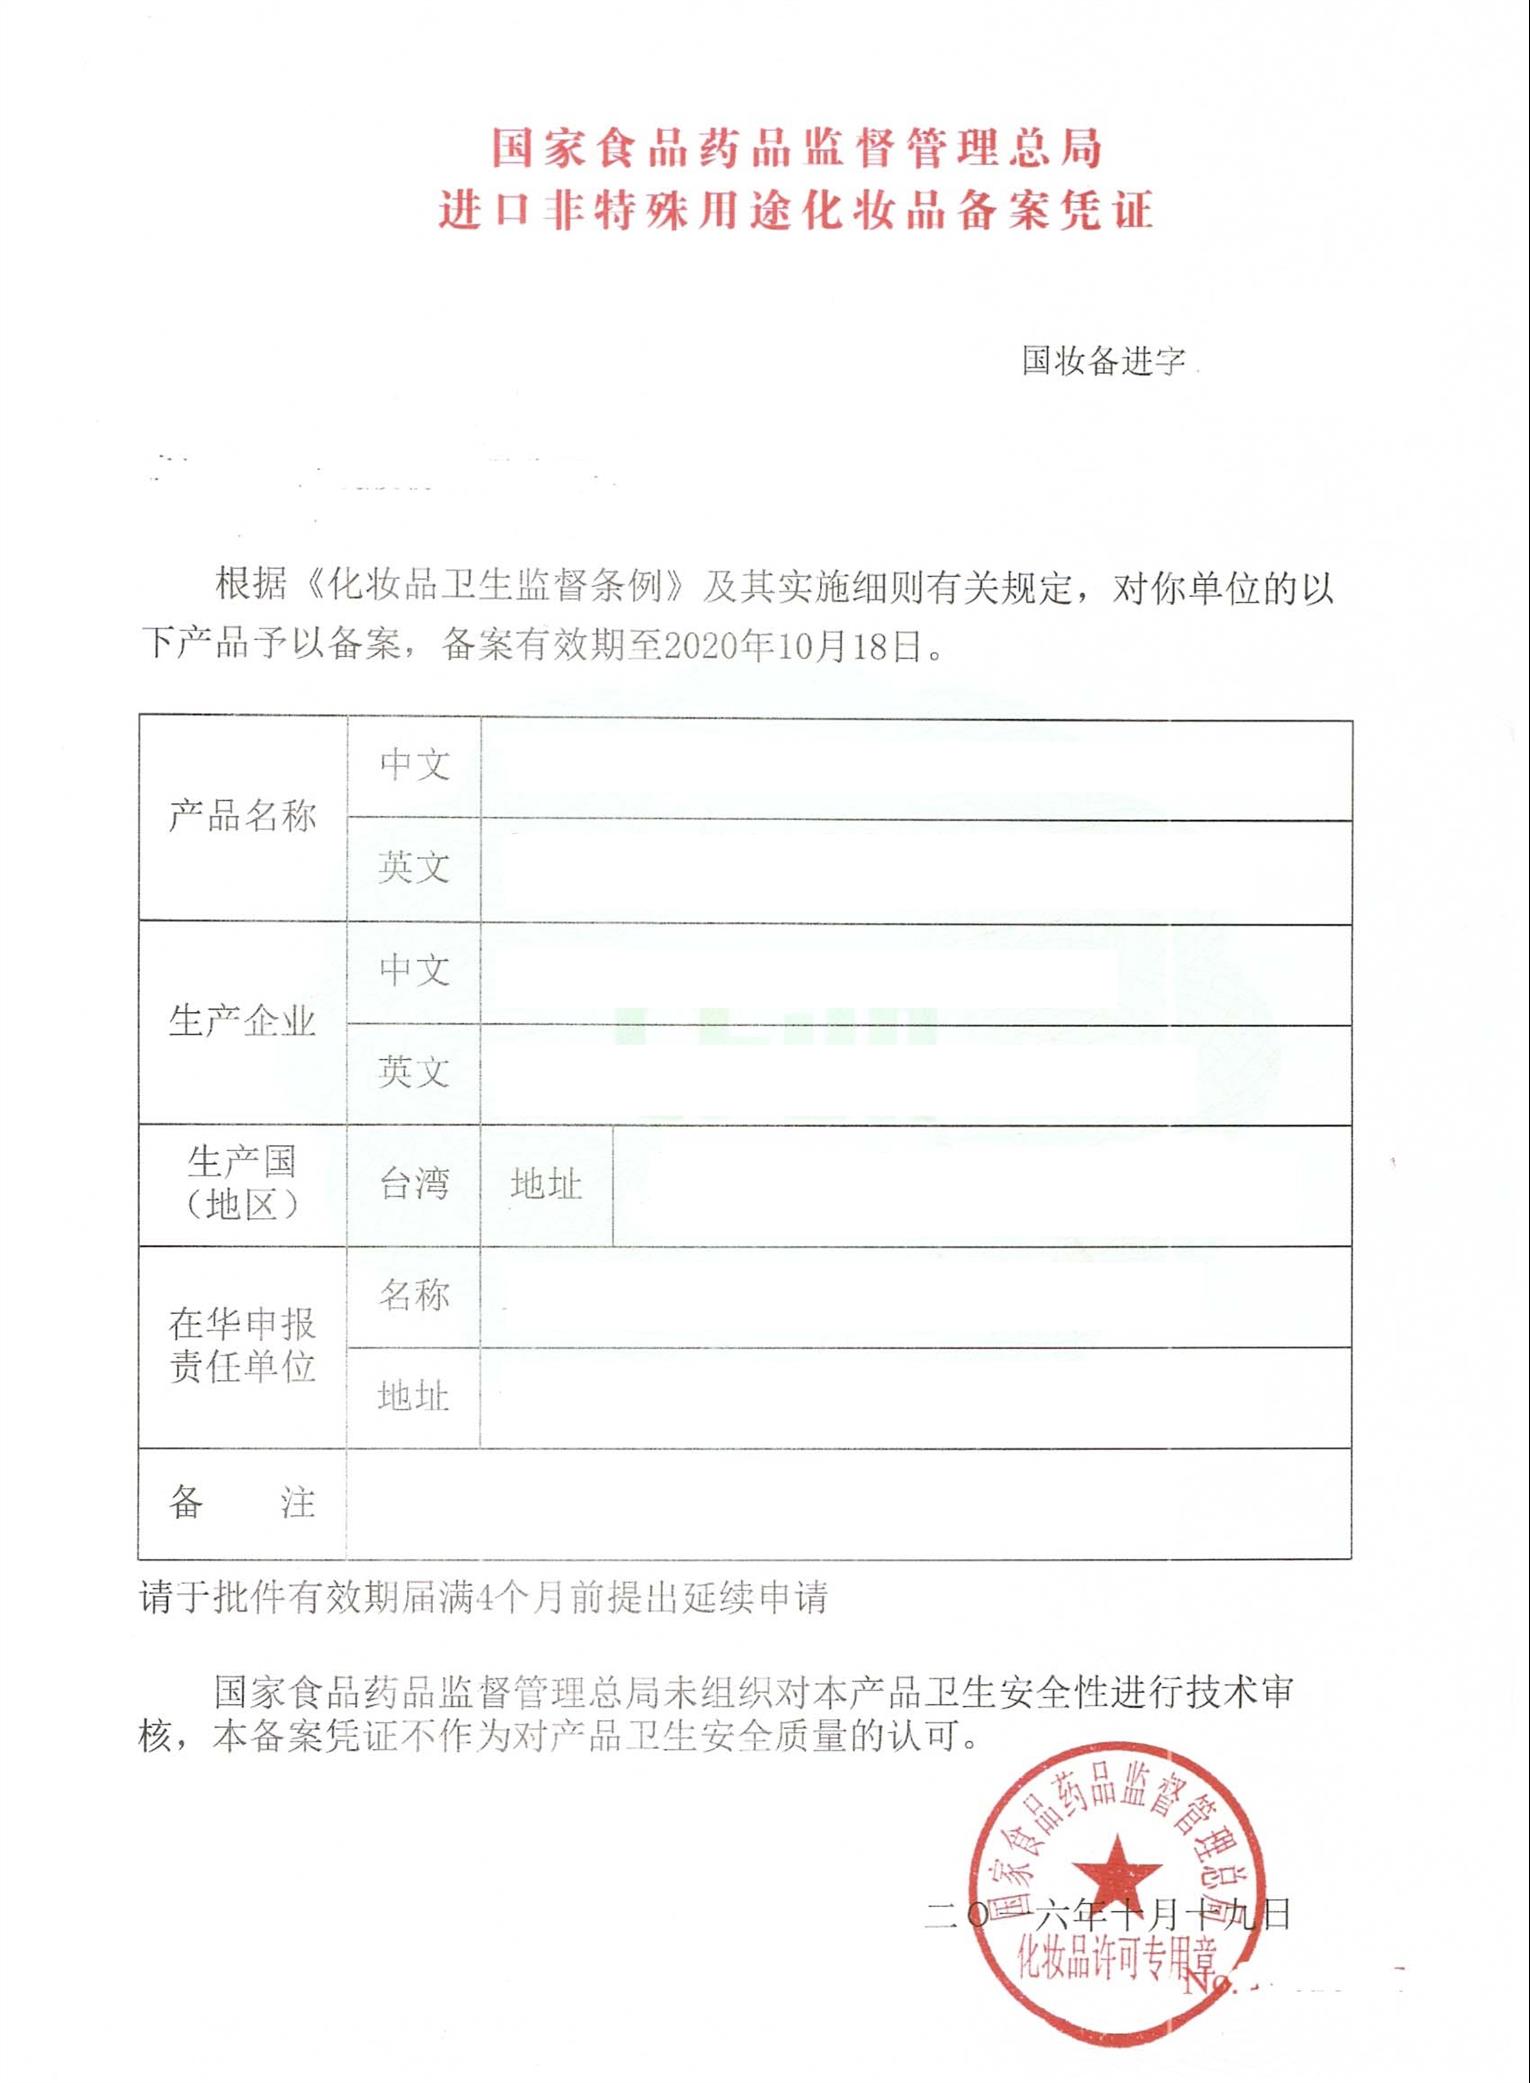 四川国产特殊化妆品申报指南机构